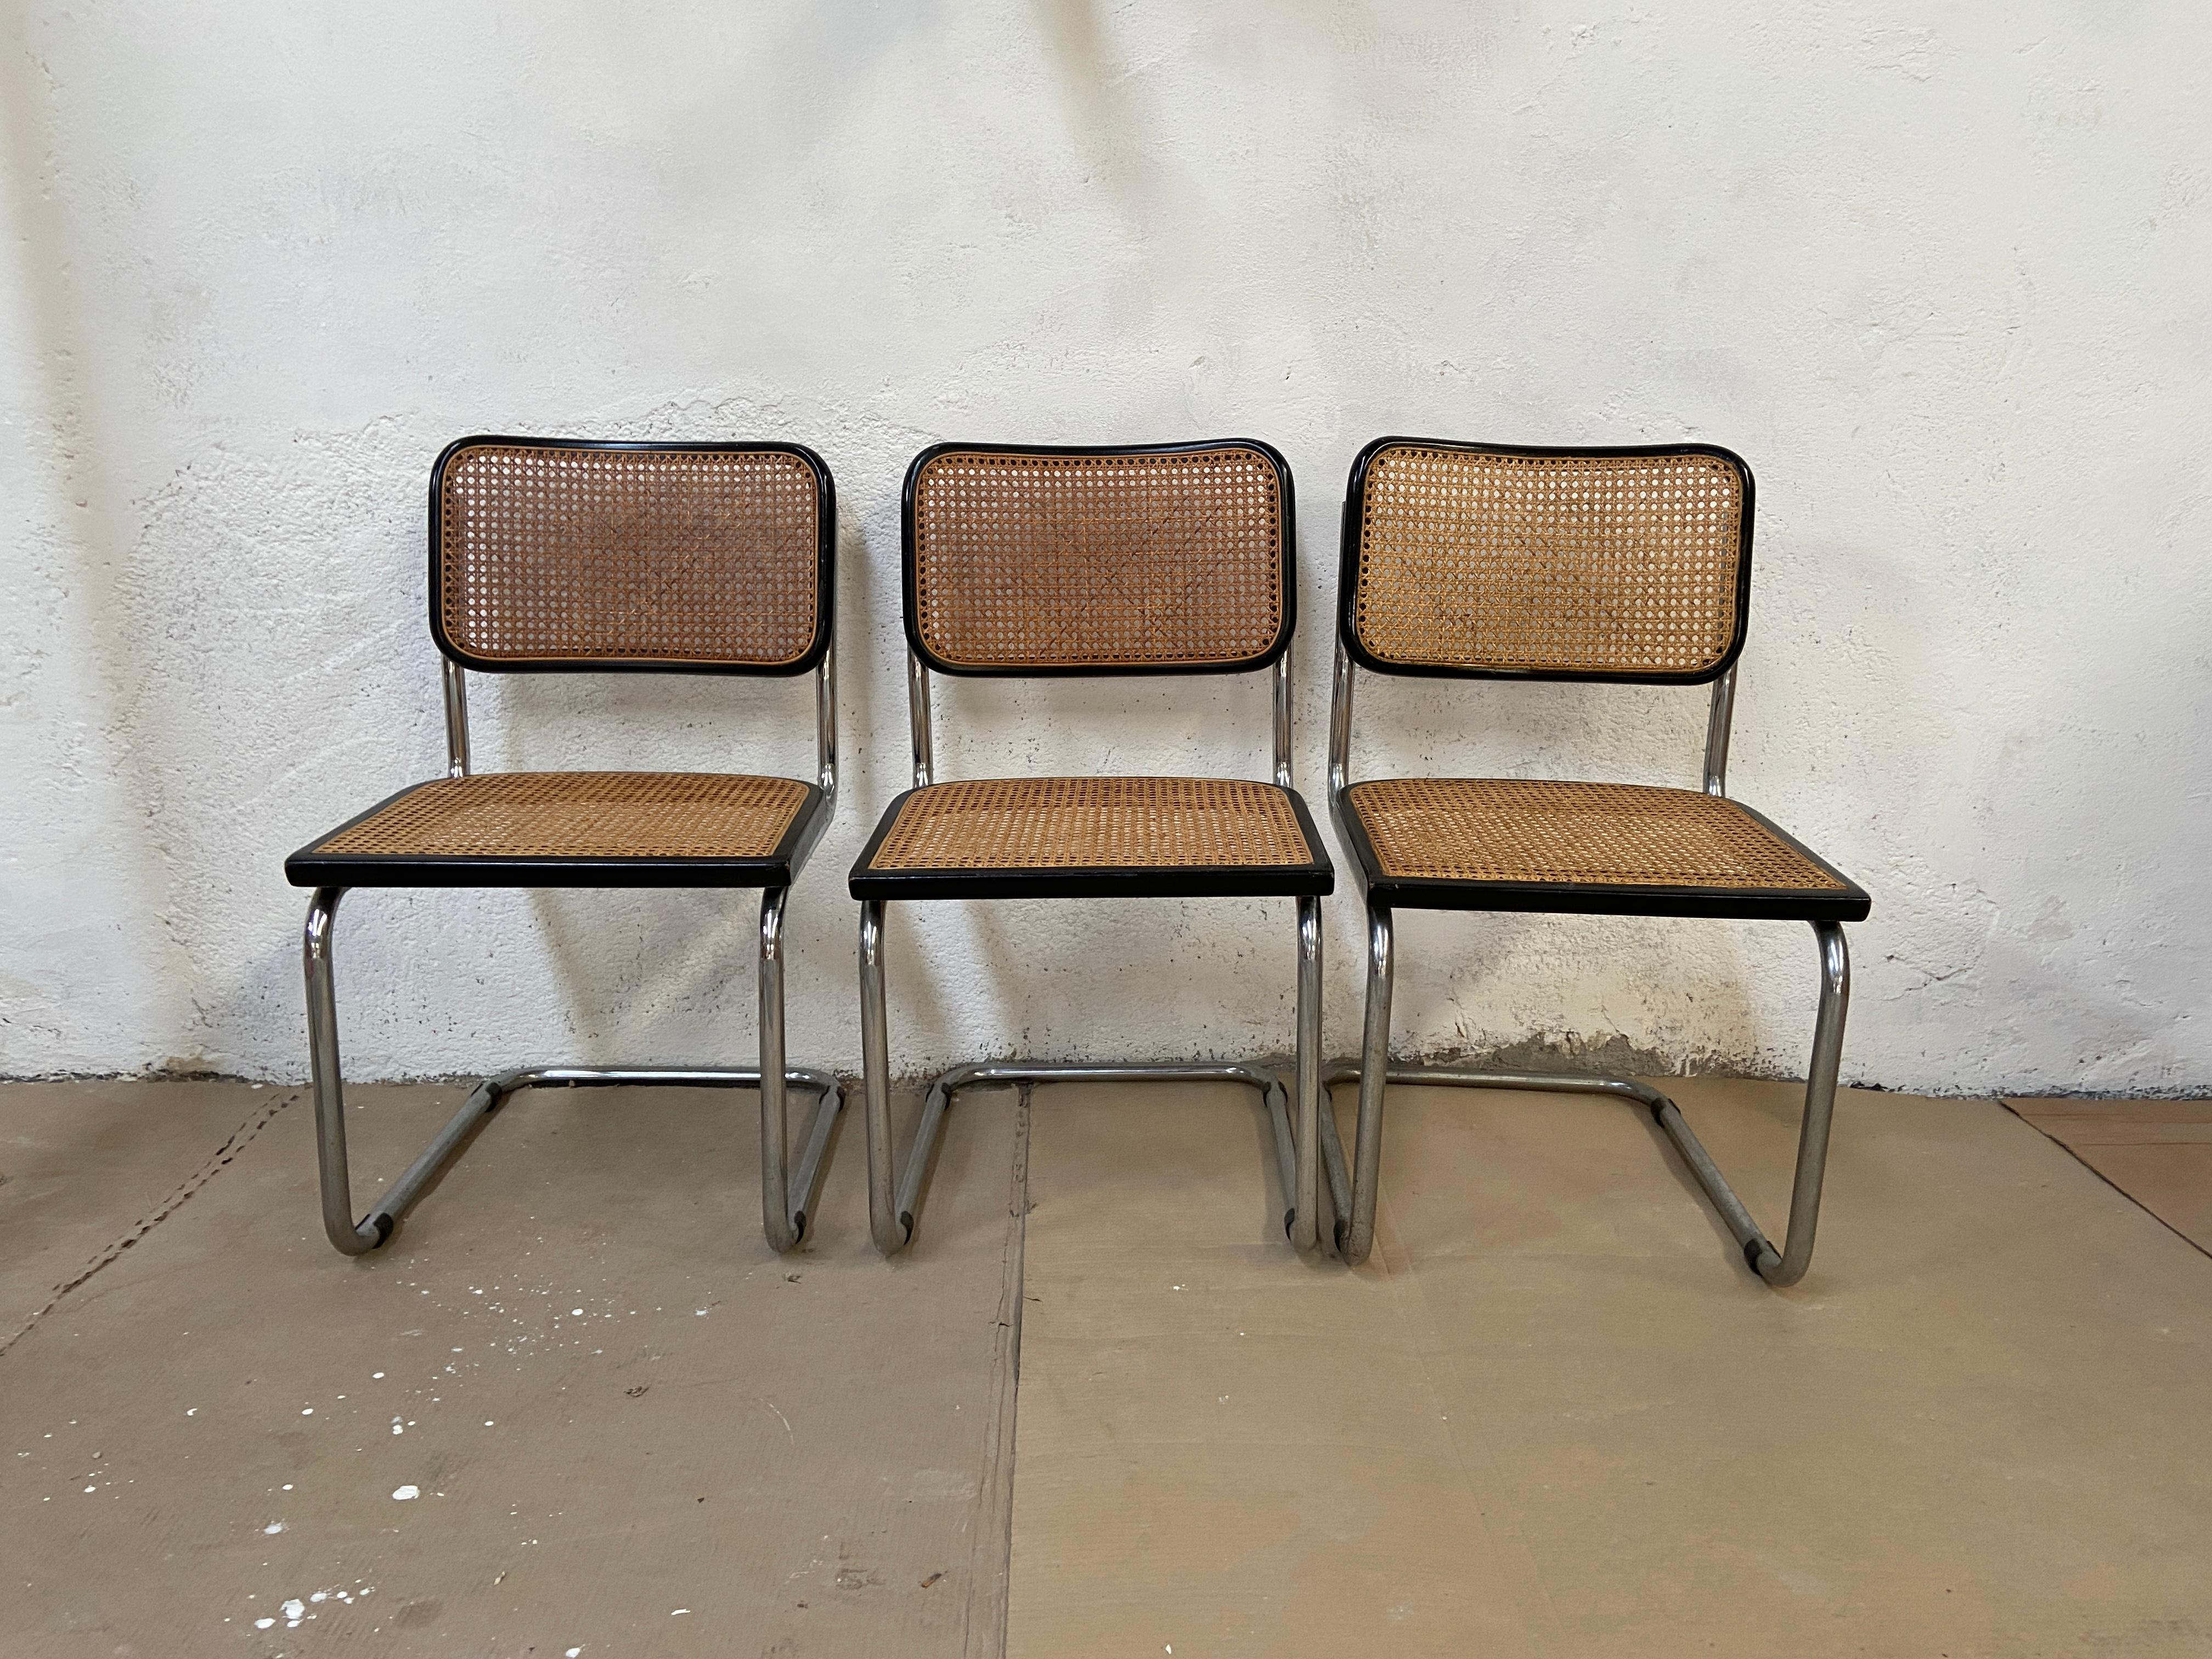 Ensemble italien de 3 chaises Cesca à piétement cantilever chromé et profilés en bois laqué noir de Marcel Breuer.
Les chaises sont en très bon état vintage.
   